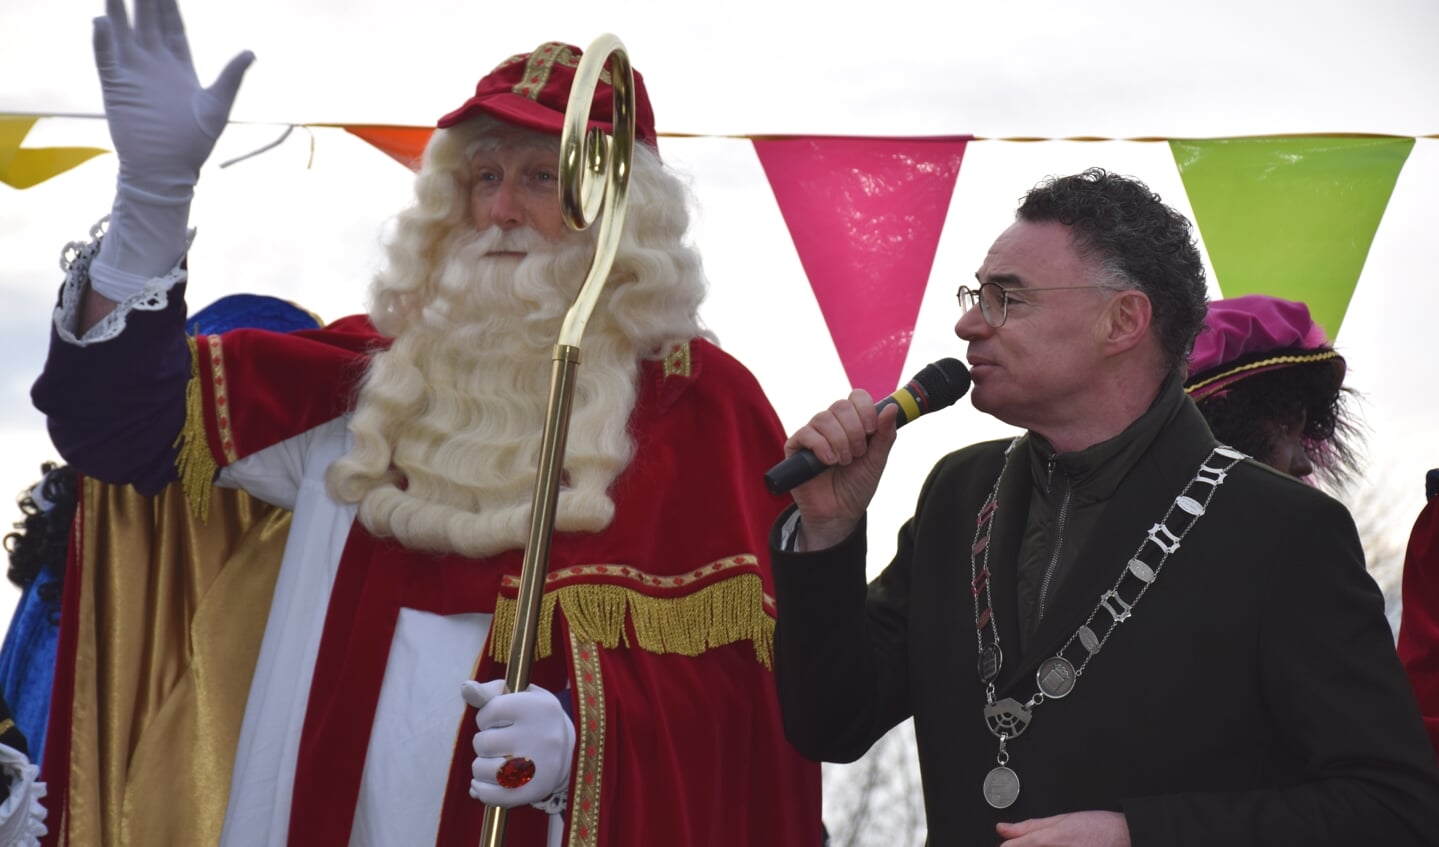 Burgemeester Isabella ontvangt de mijterloze Sinterklaas